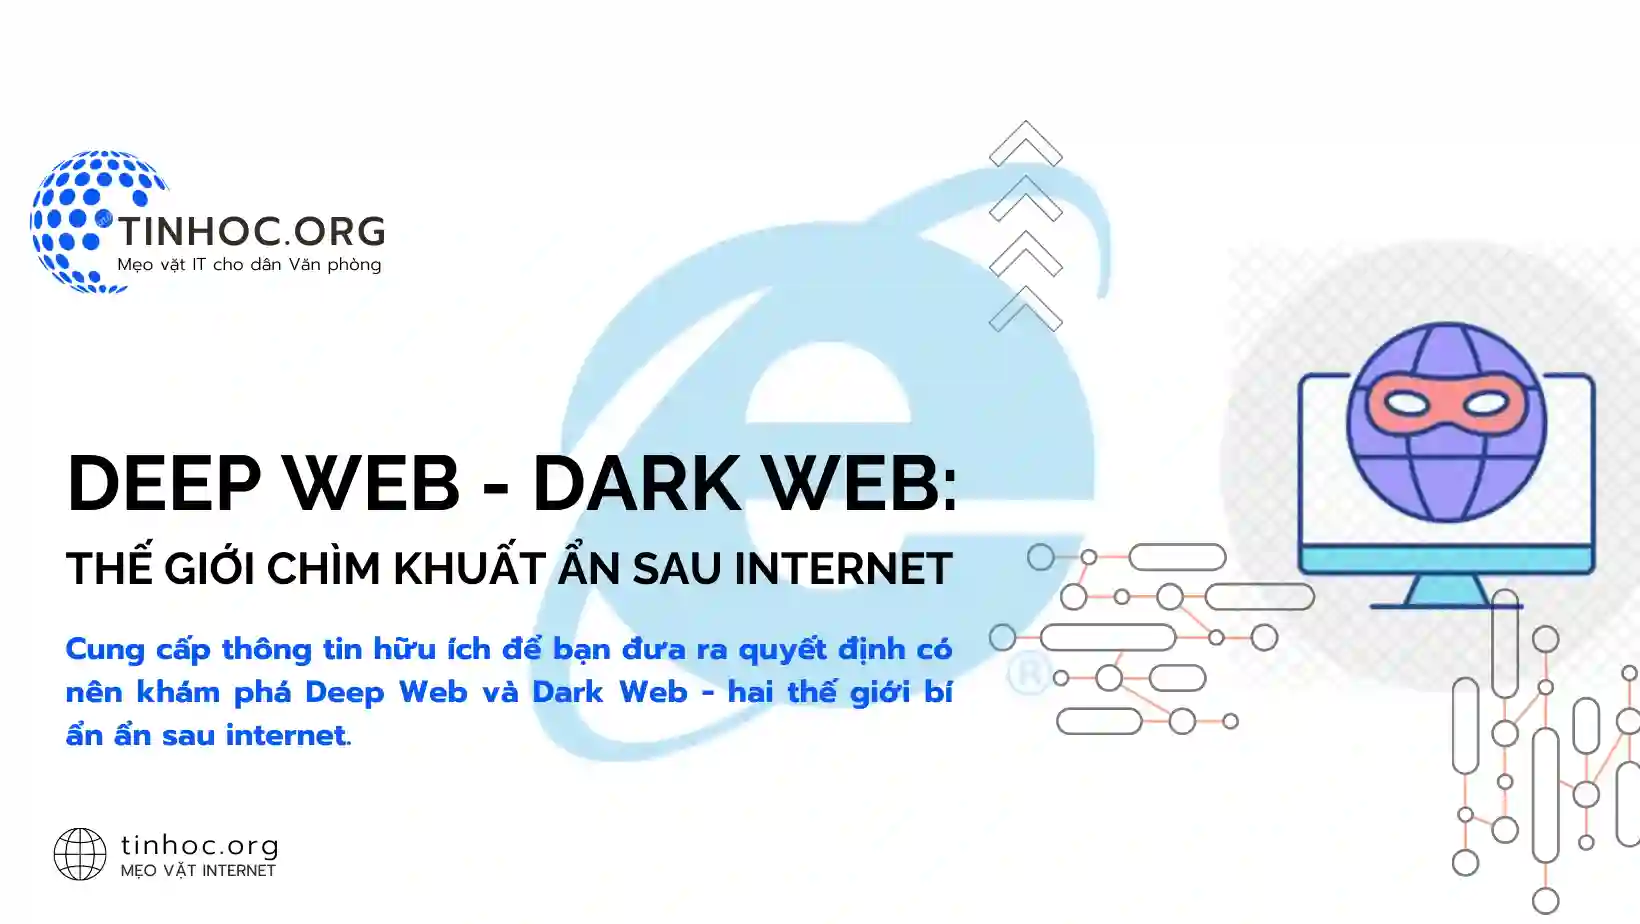 Cung cấp thông tin hữu ích để bạn đưa ra quyết định có nên khám phá Deep Web và Dark Web - hai thế giới bí ẩn ẩn sau internet.